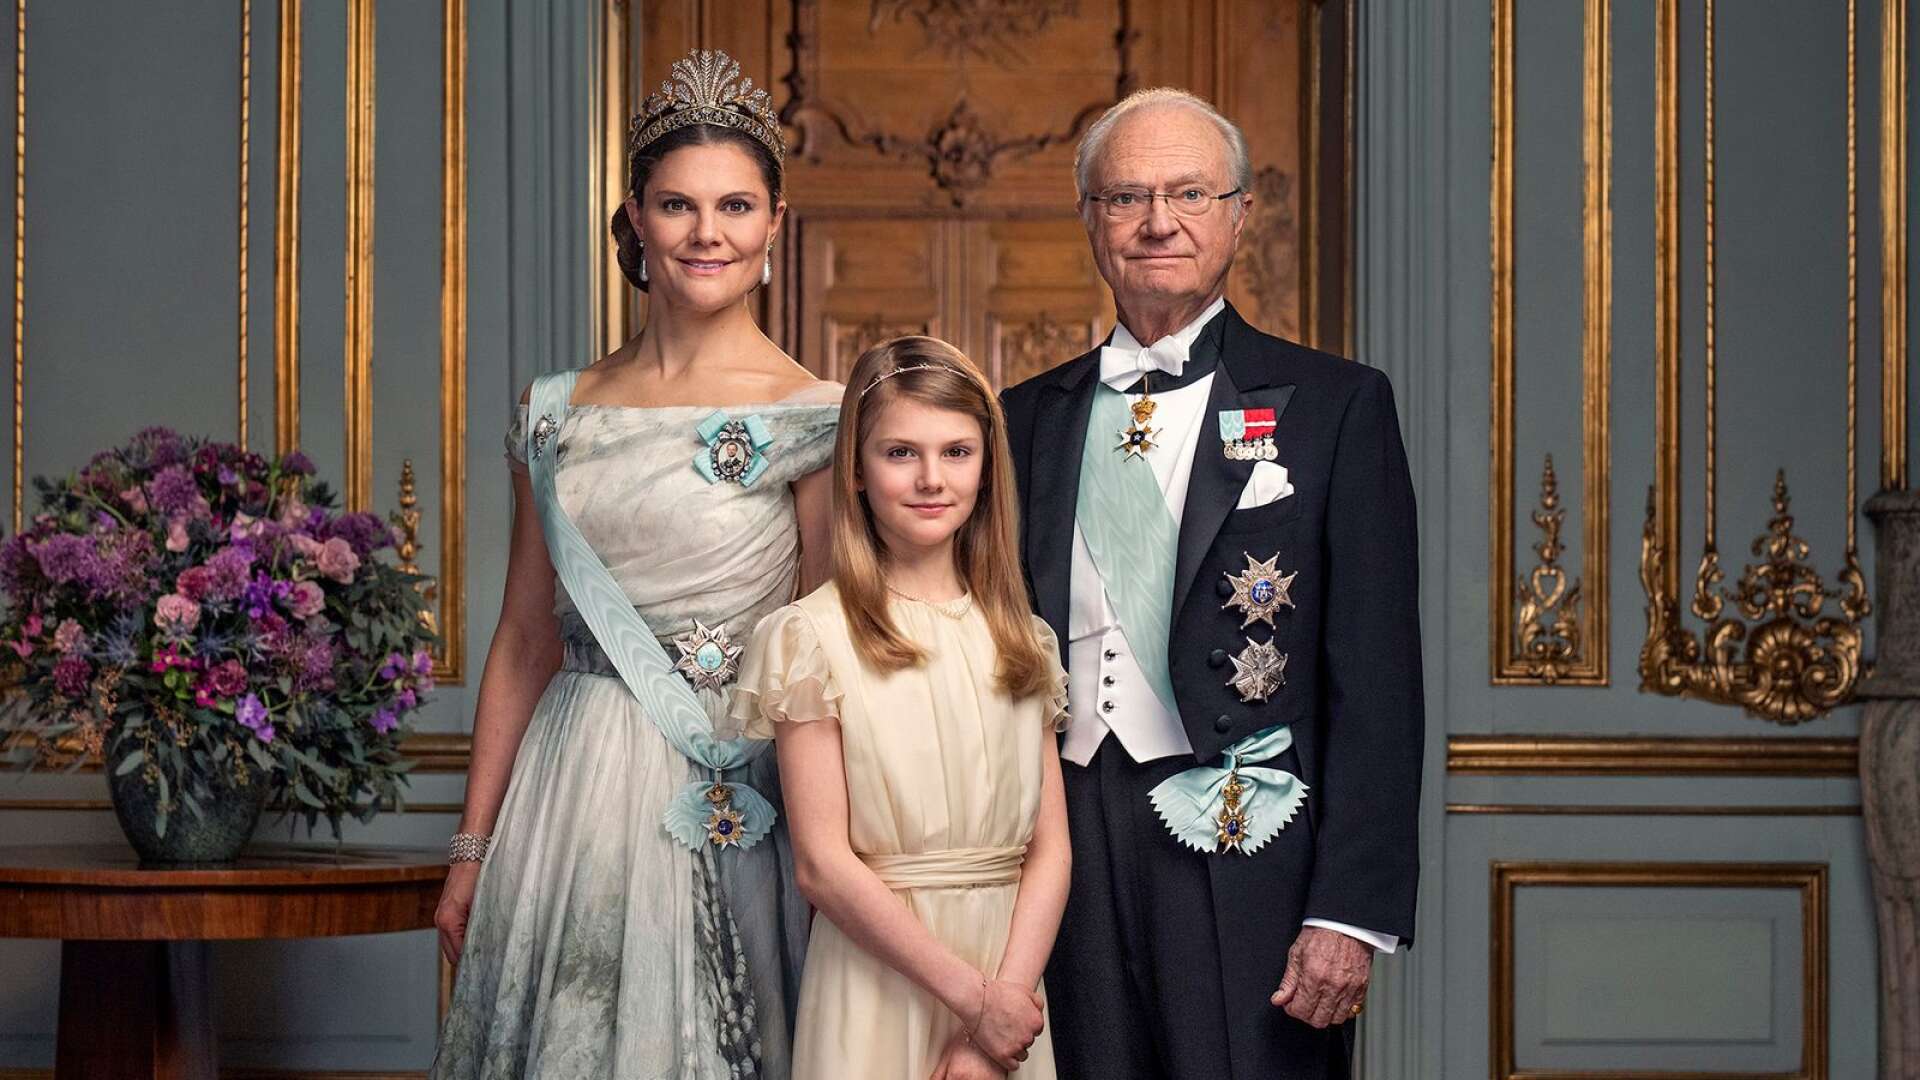 Monarkin är ett relativt billigt statsskick som fungerar väl för vår demokrati. Så kommer det att bli även när talangfulla kronprinsessan Victoria en dag tar över. (Bild på kronprinsessan Victoria, prinsessan Estelle och kung Carl XVI Gustaf.)